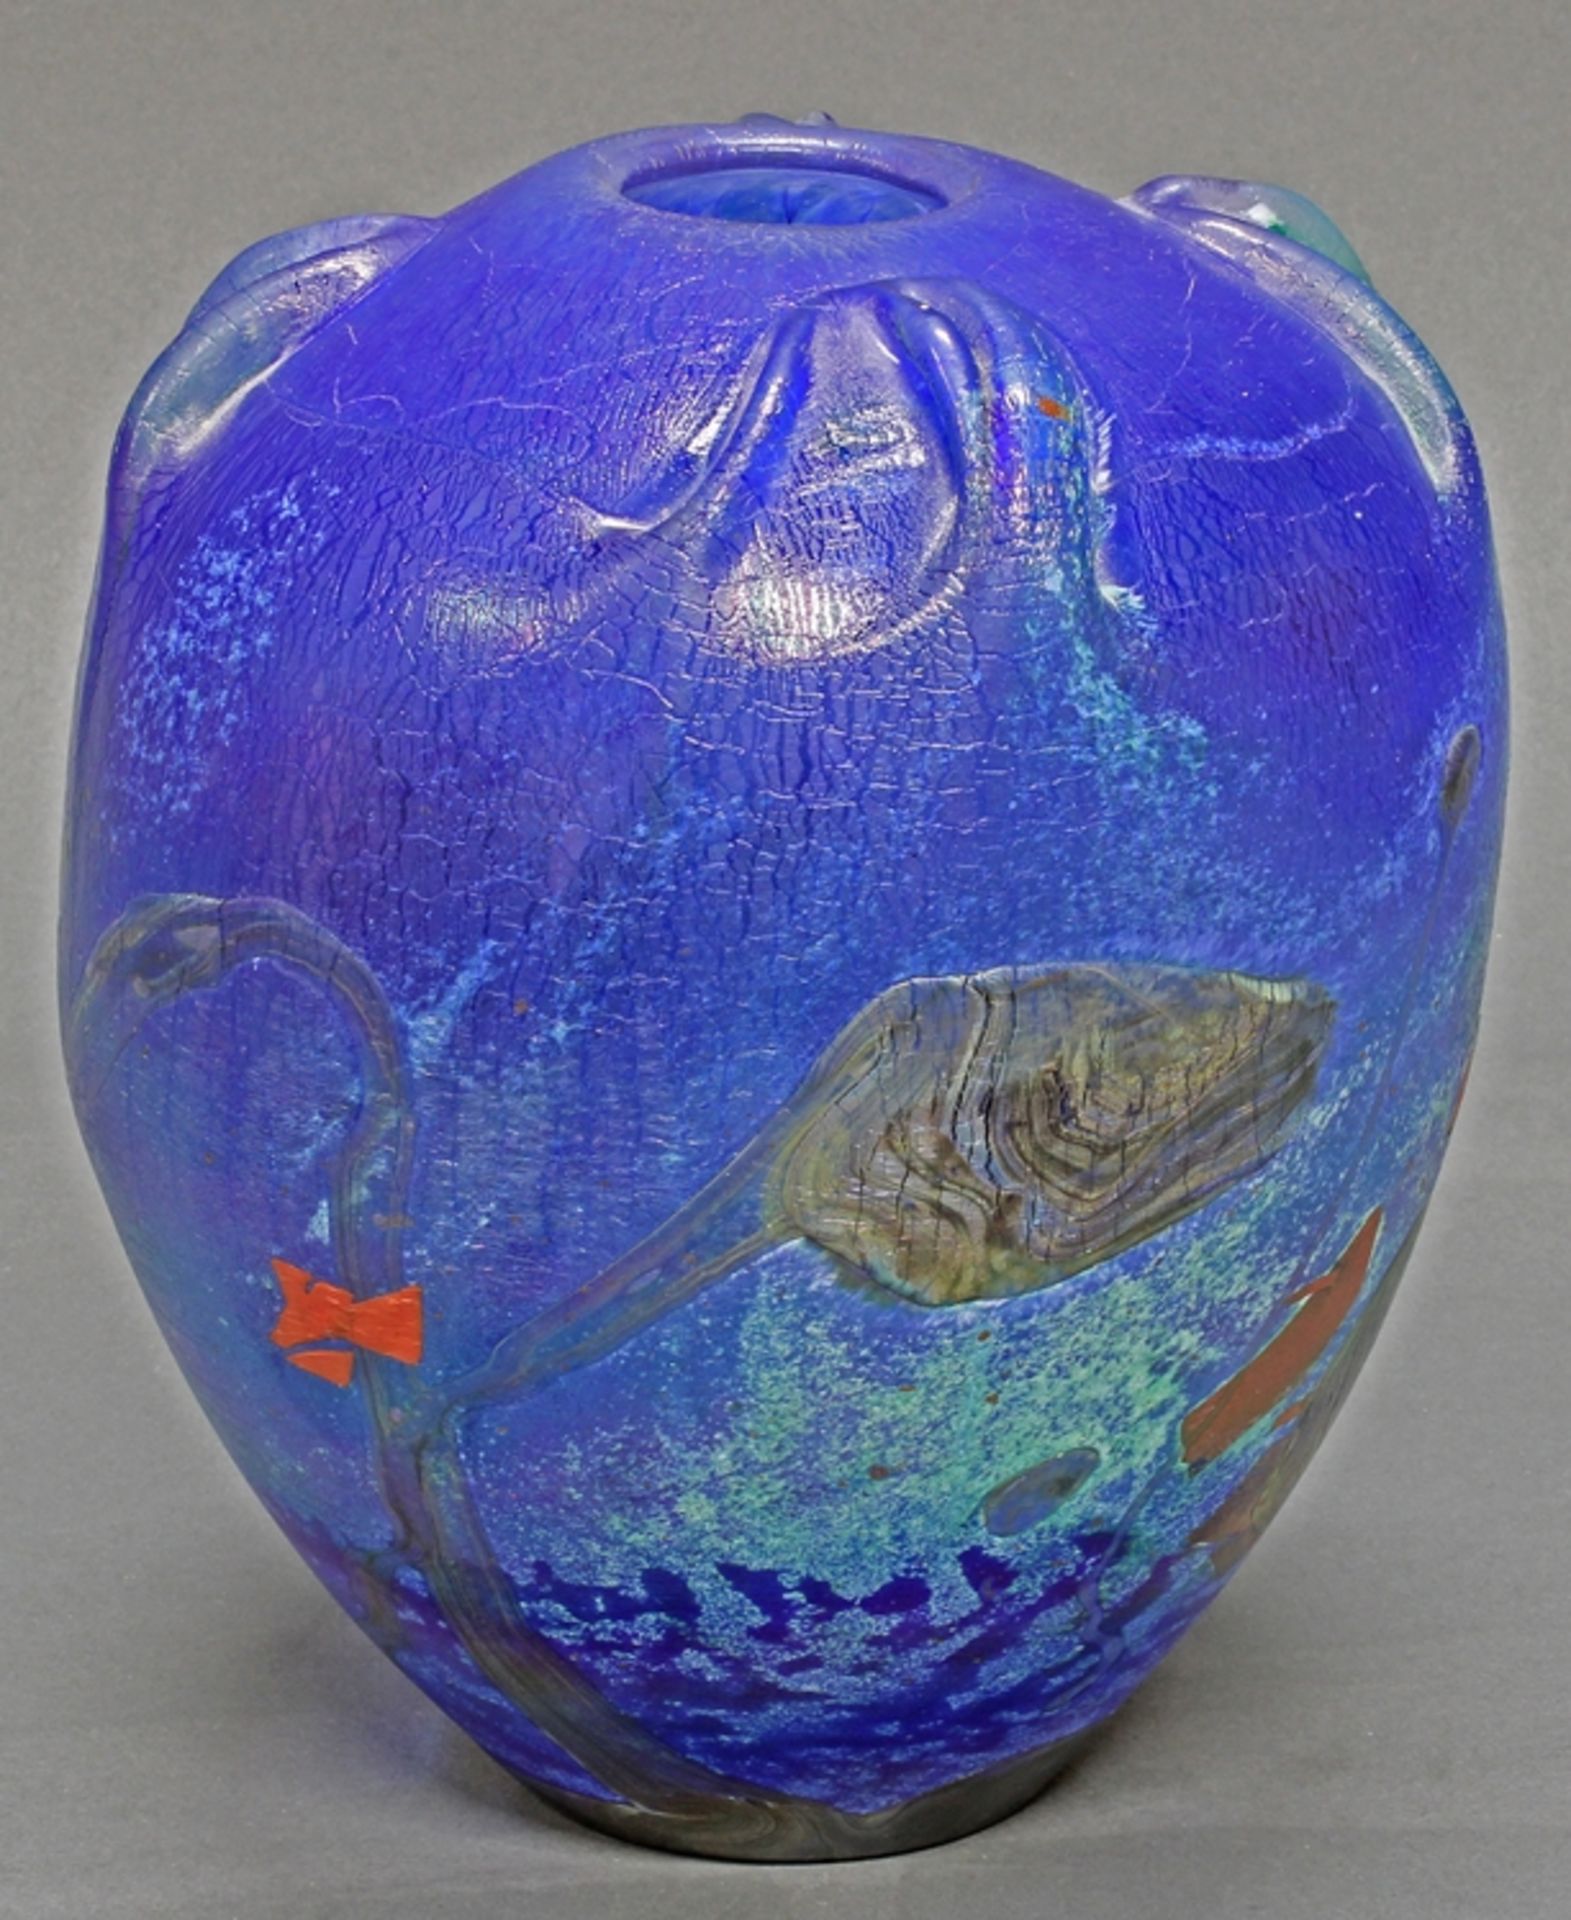 Vase, Glas, Jean-Claude Novaro, 1986, vegetabiler, farbiger Dekor auf blauem Grund, lüstrierend, si - Image 2 of 3